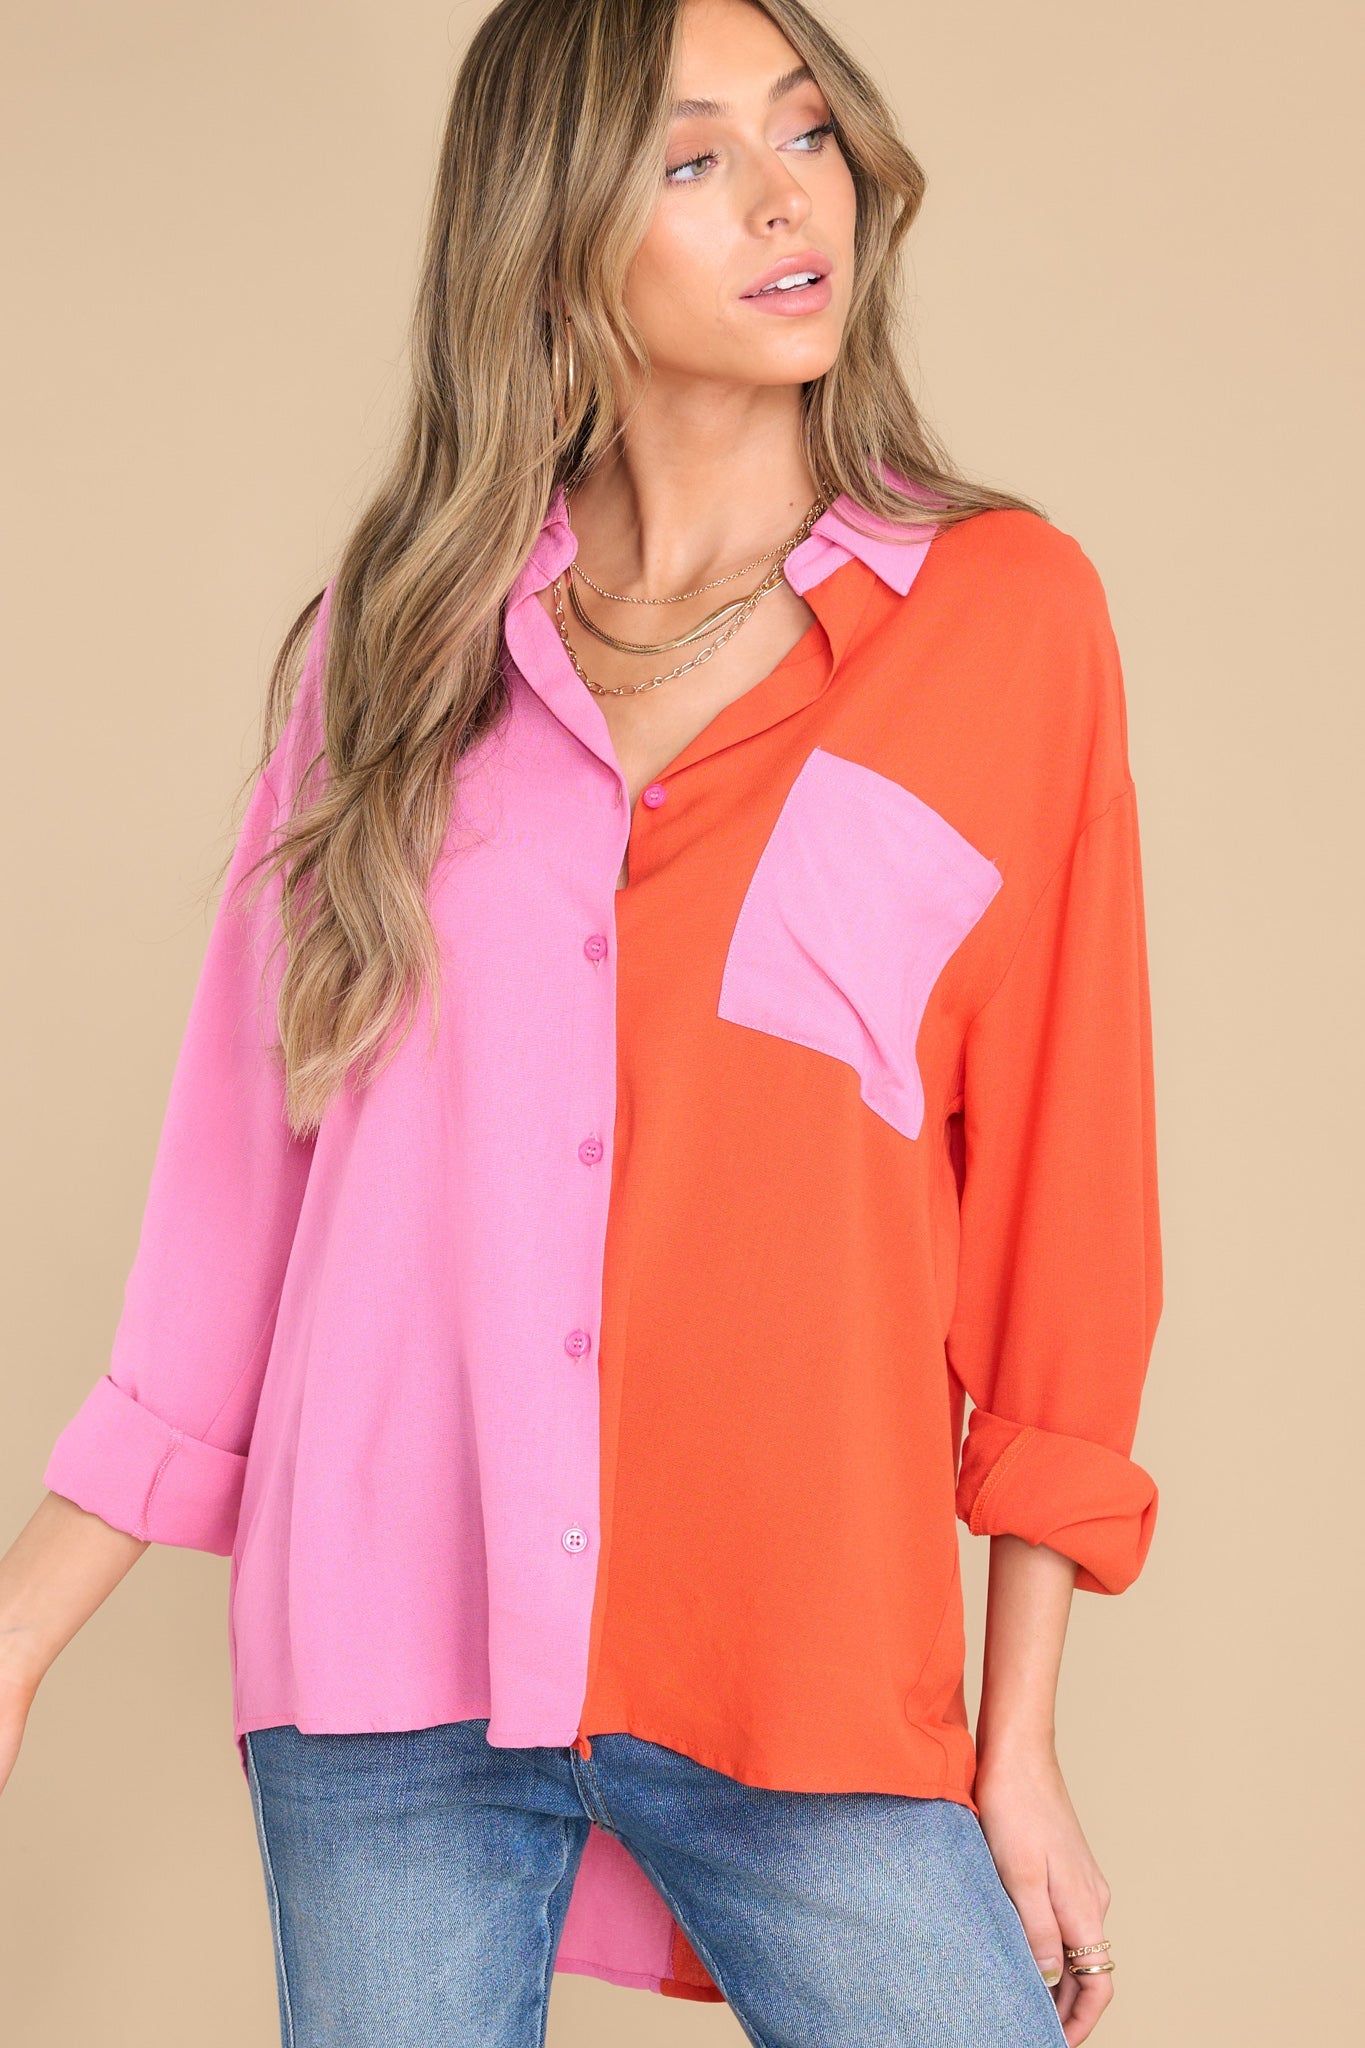 Color Block Button Down Shirt - Pink/Orange